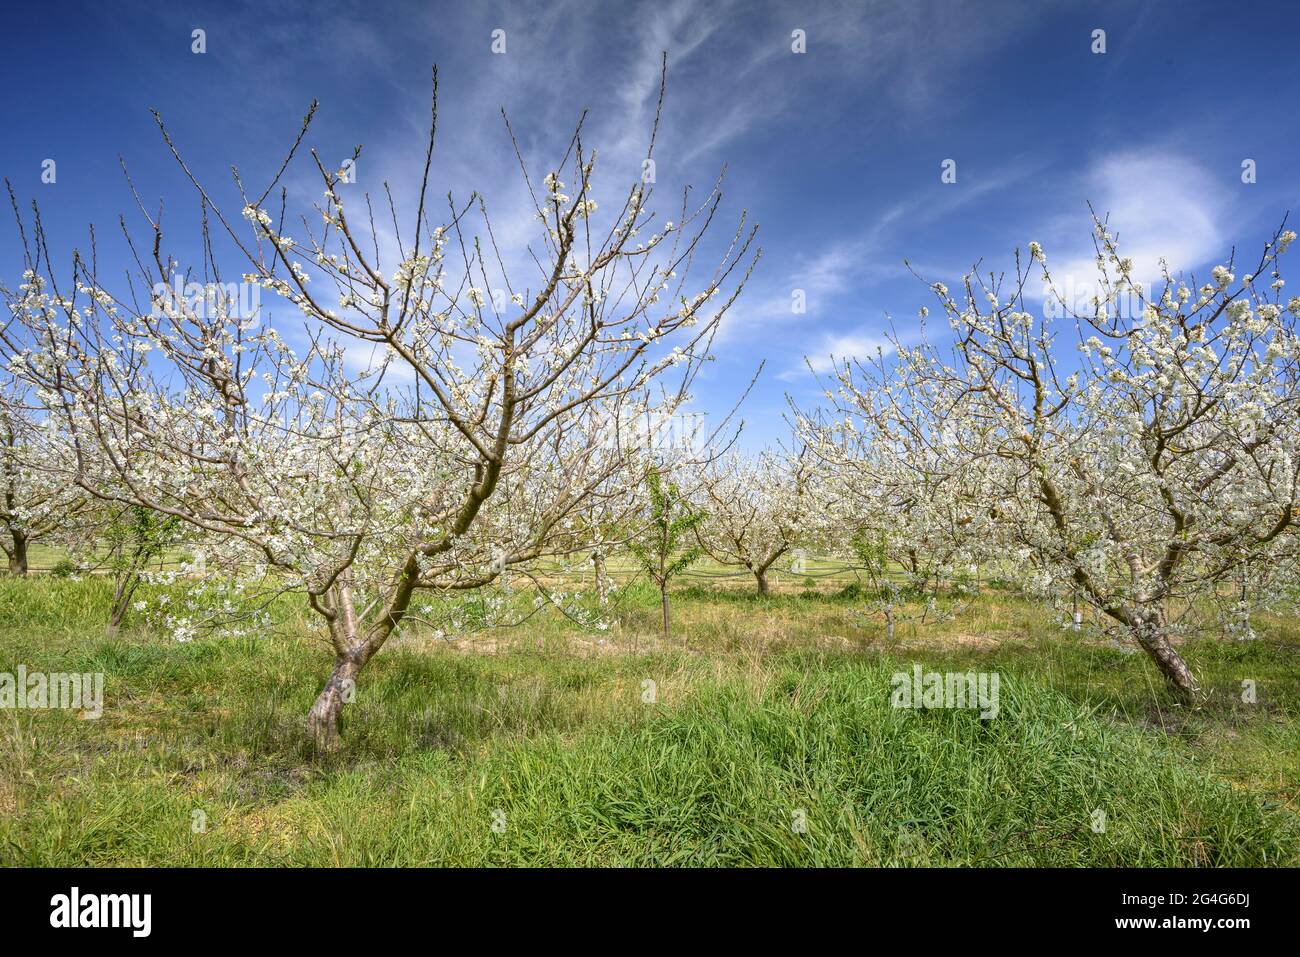 Cerisiers en fleurs au printemps près du village de Miravet (Tarragone, Catalogne, Espagne) ESP: Campos de cerezos florecidos en primavera cerca de Miravet Banque D'Images